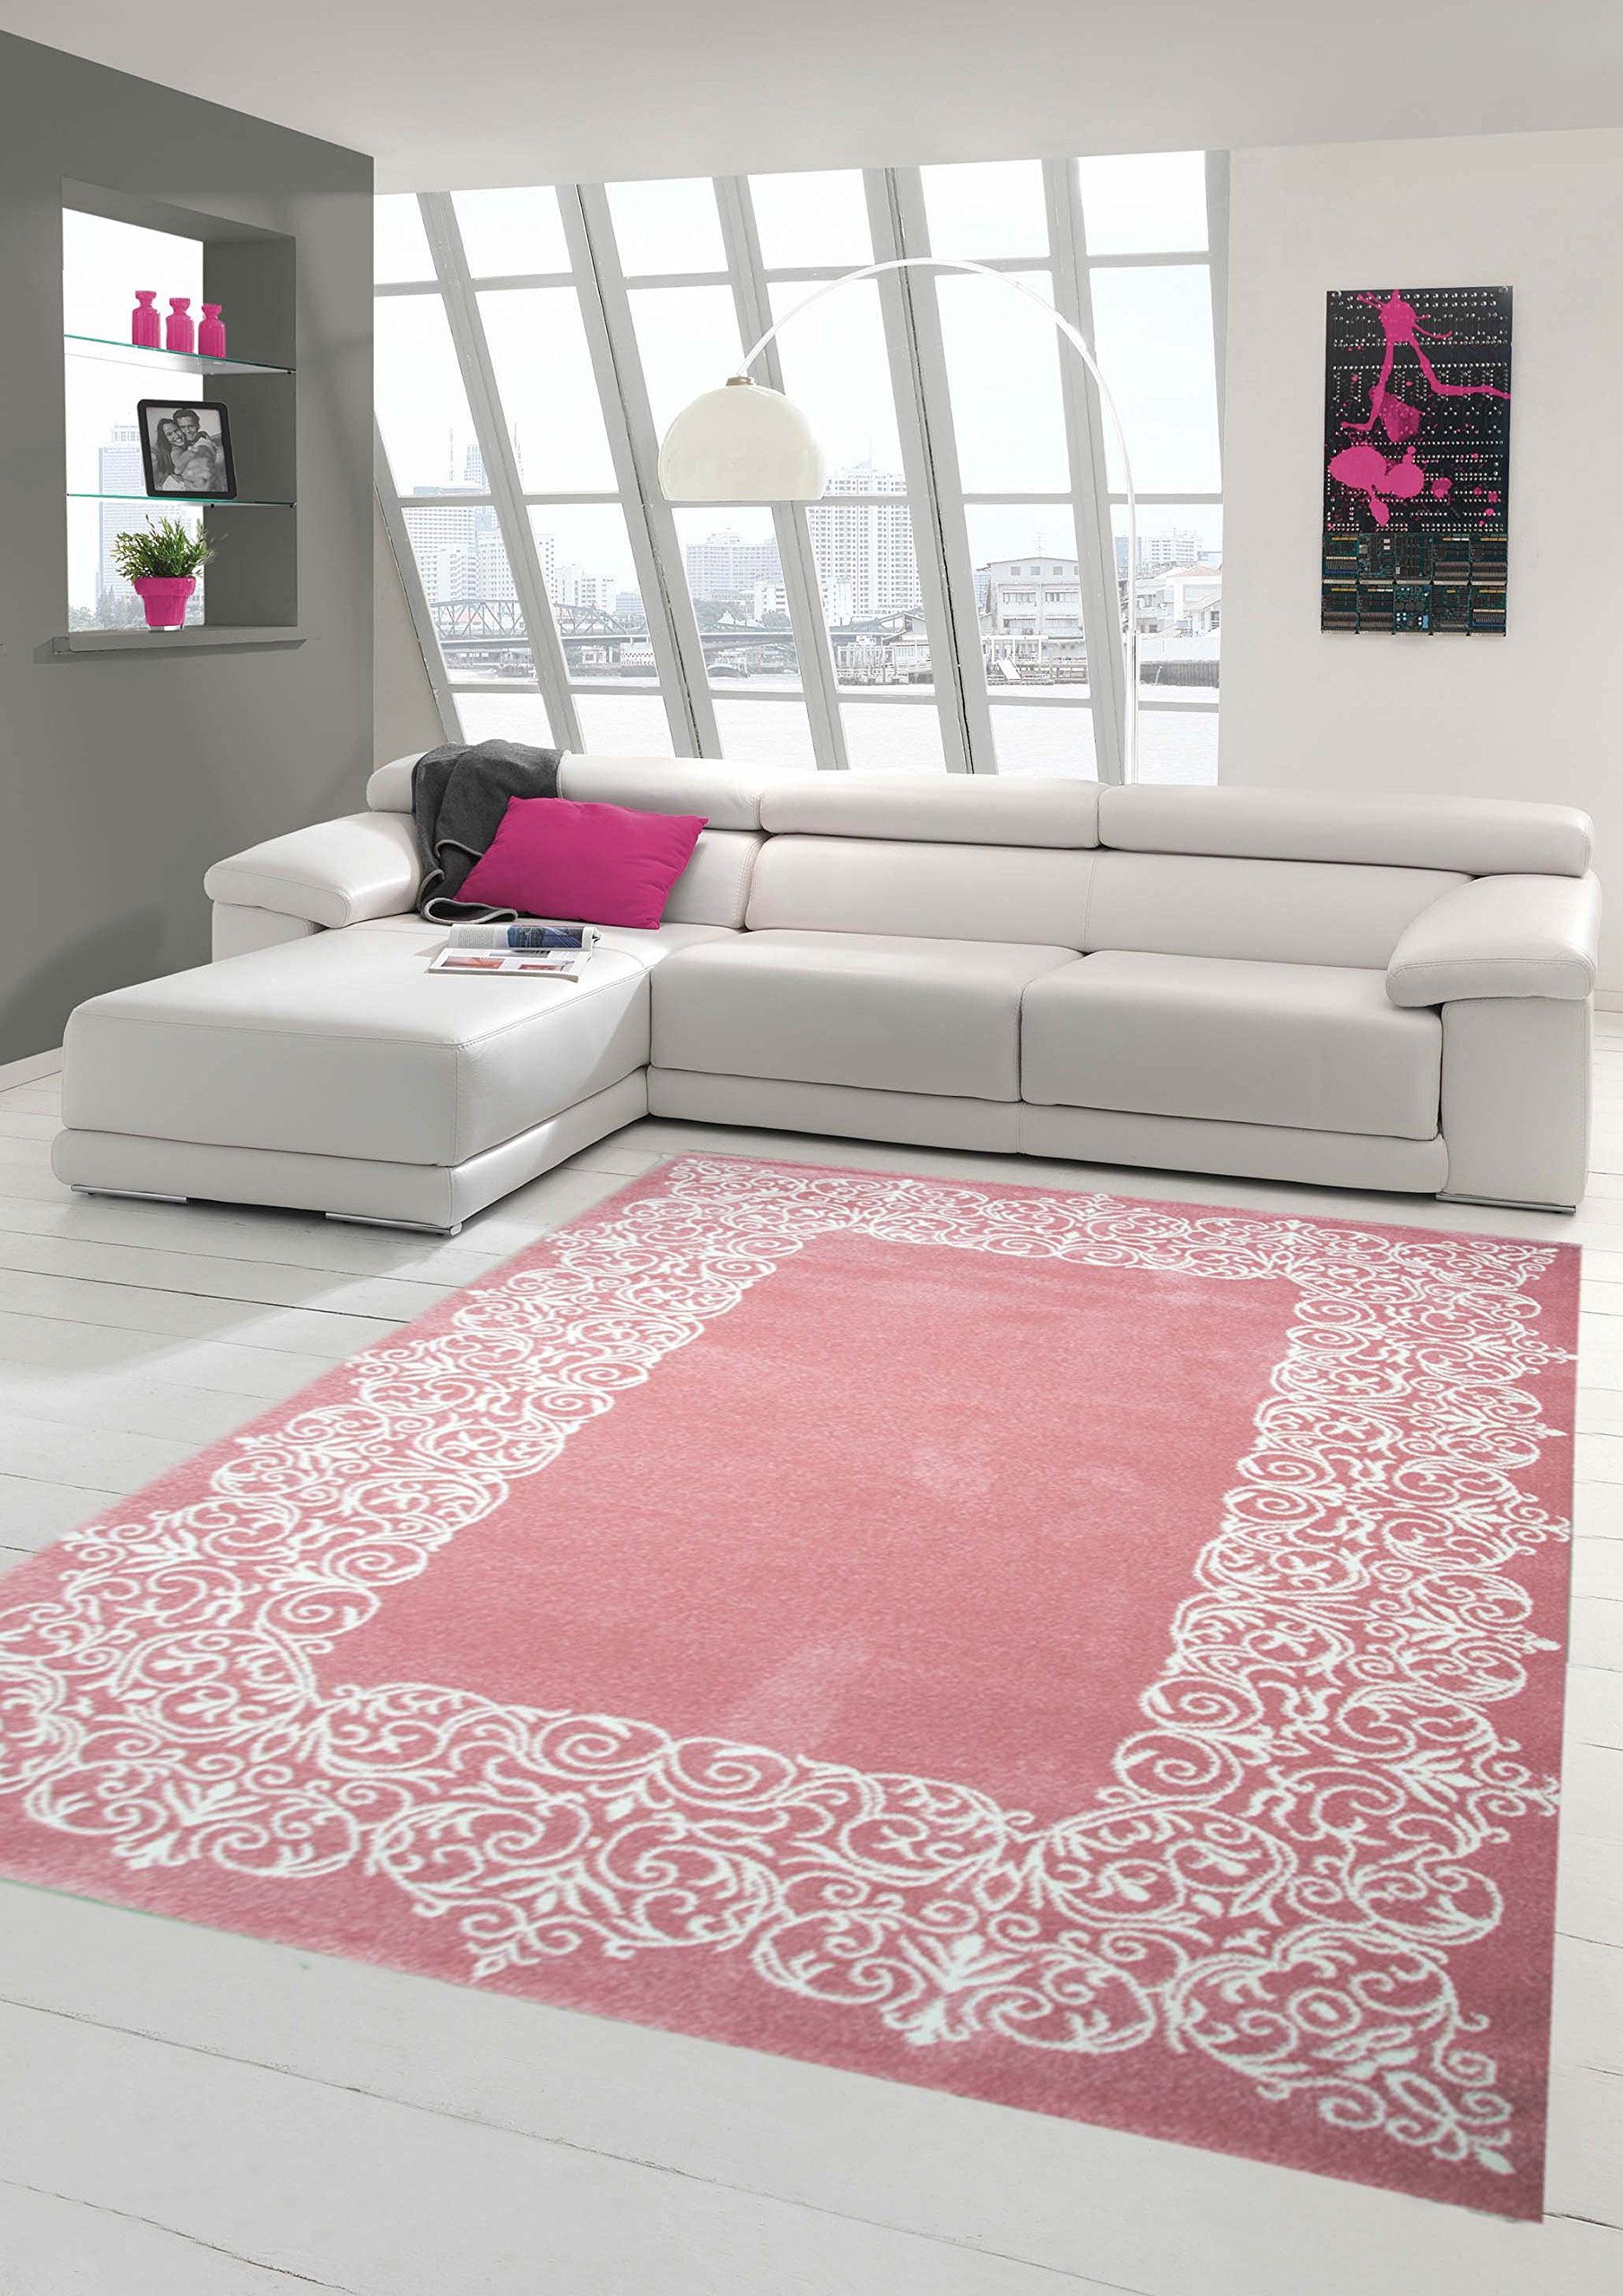 Traum Teppich Designerteppich Moderner Teppich Wohnzimmerteppich Kurzflor Teppich mit Bordüre Rosa Weiß, Größe 140x200 cm